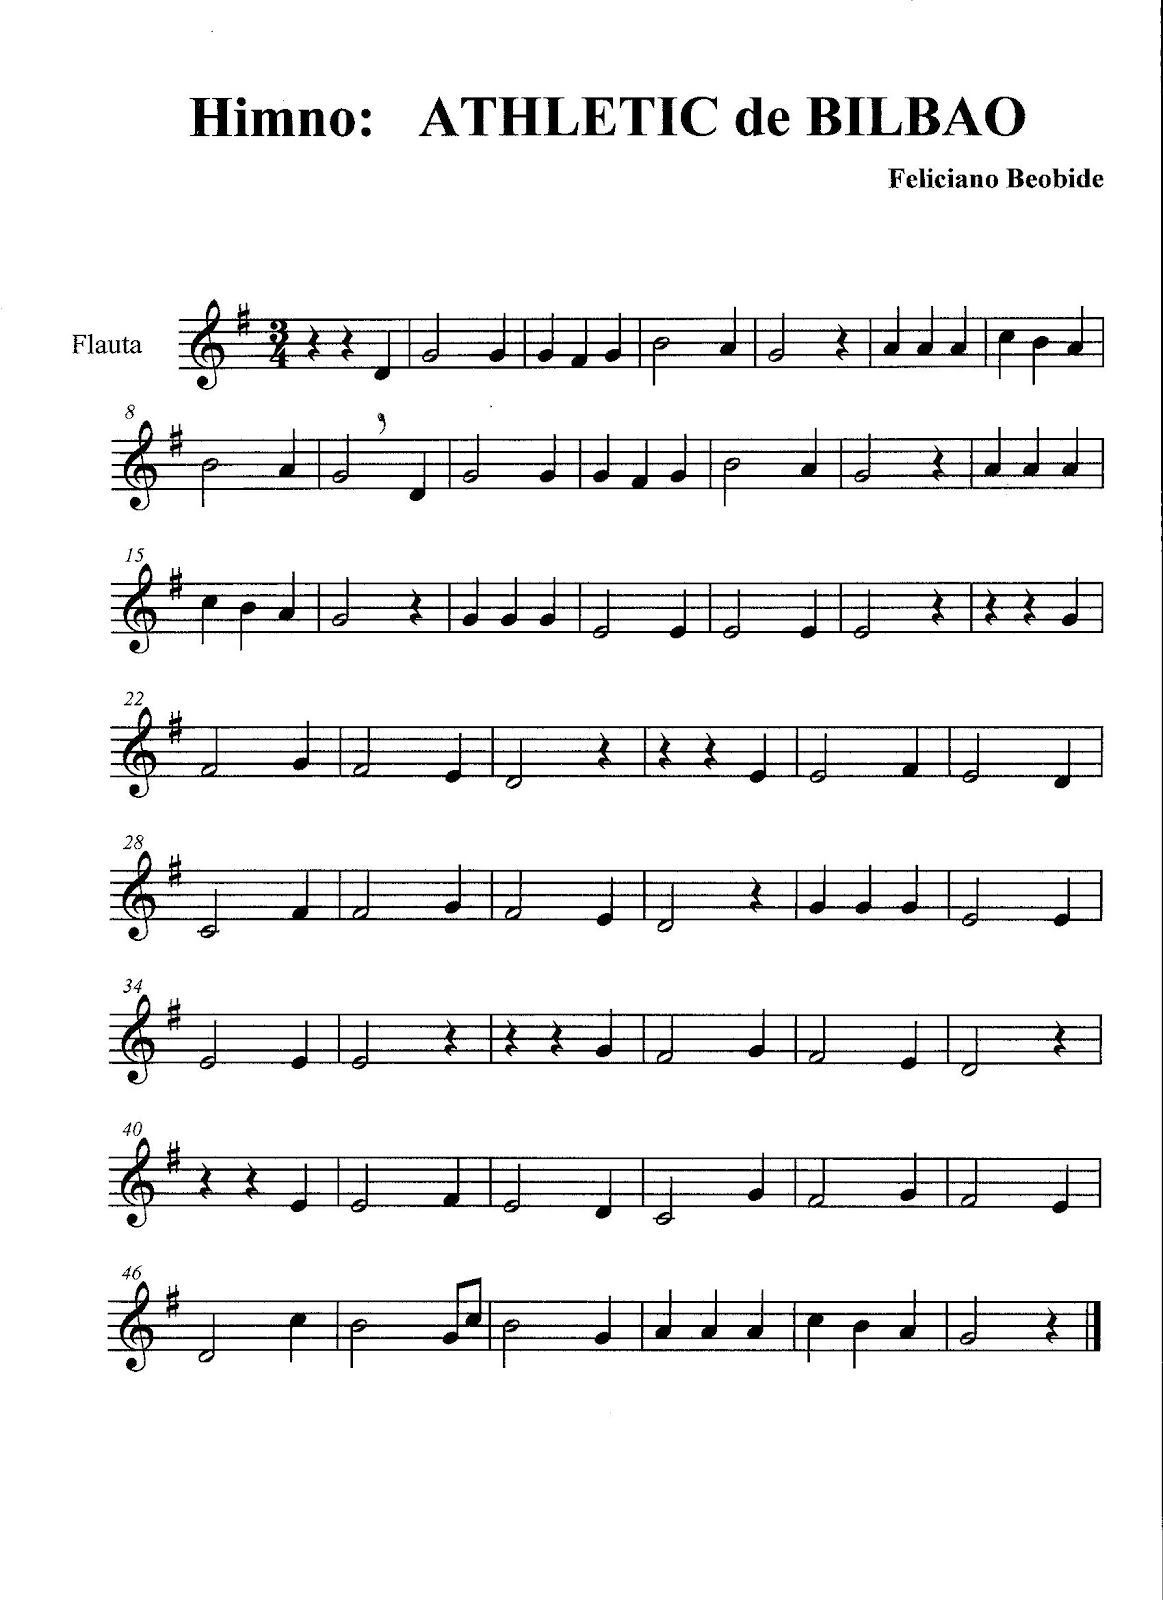 MUSICA EN RIOMAR: Himno ATHLETIC de BILBAO